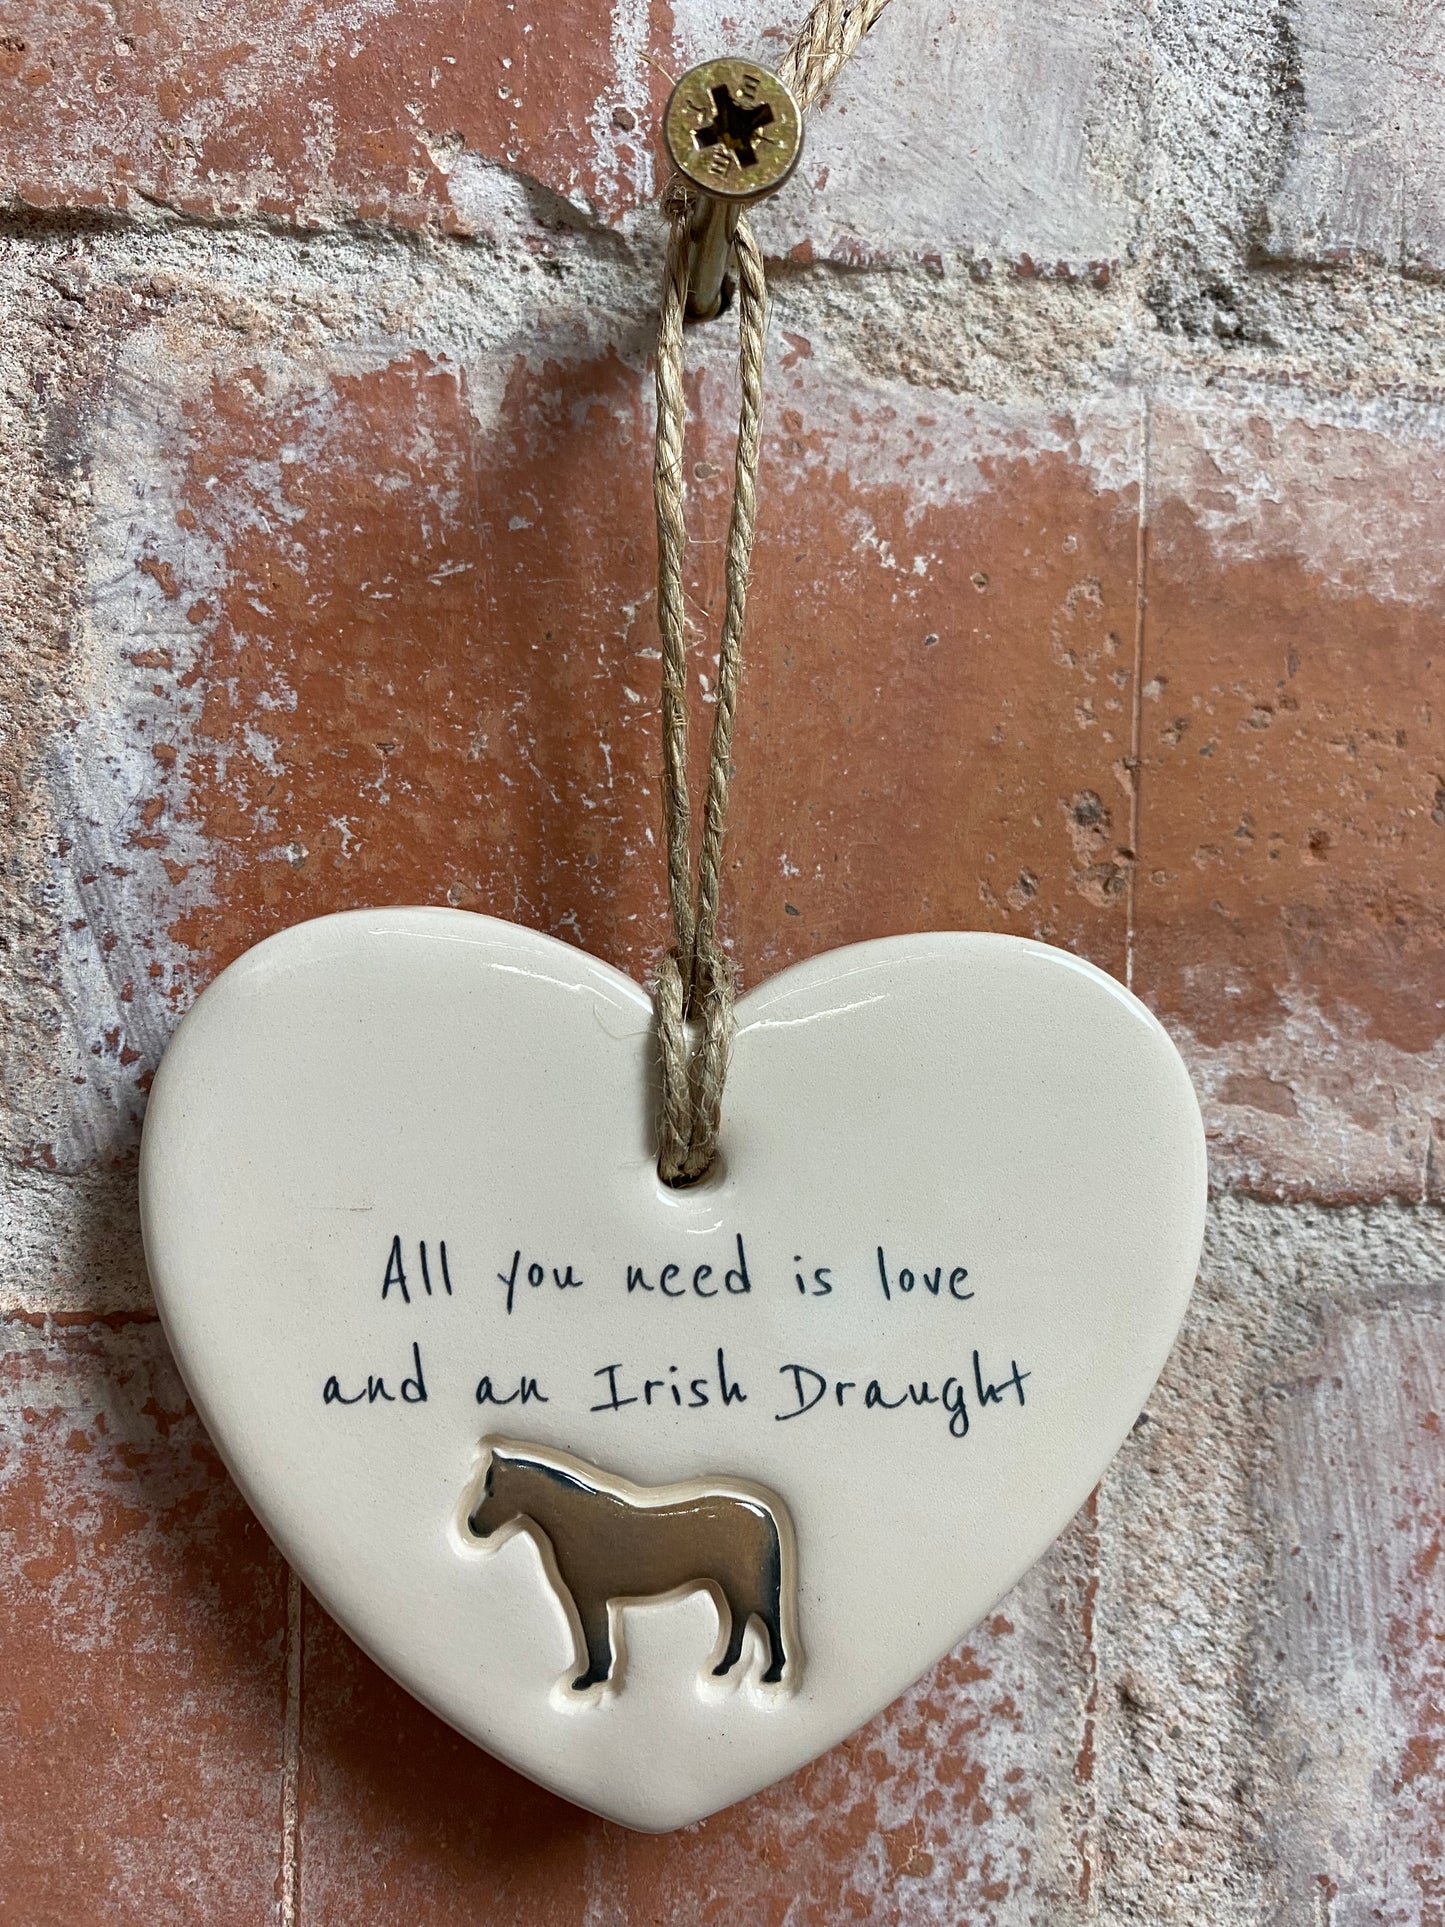 Irish Draught ceramic heart